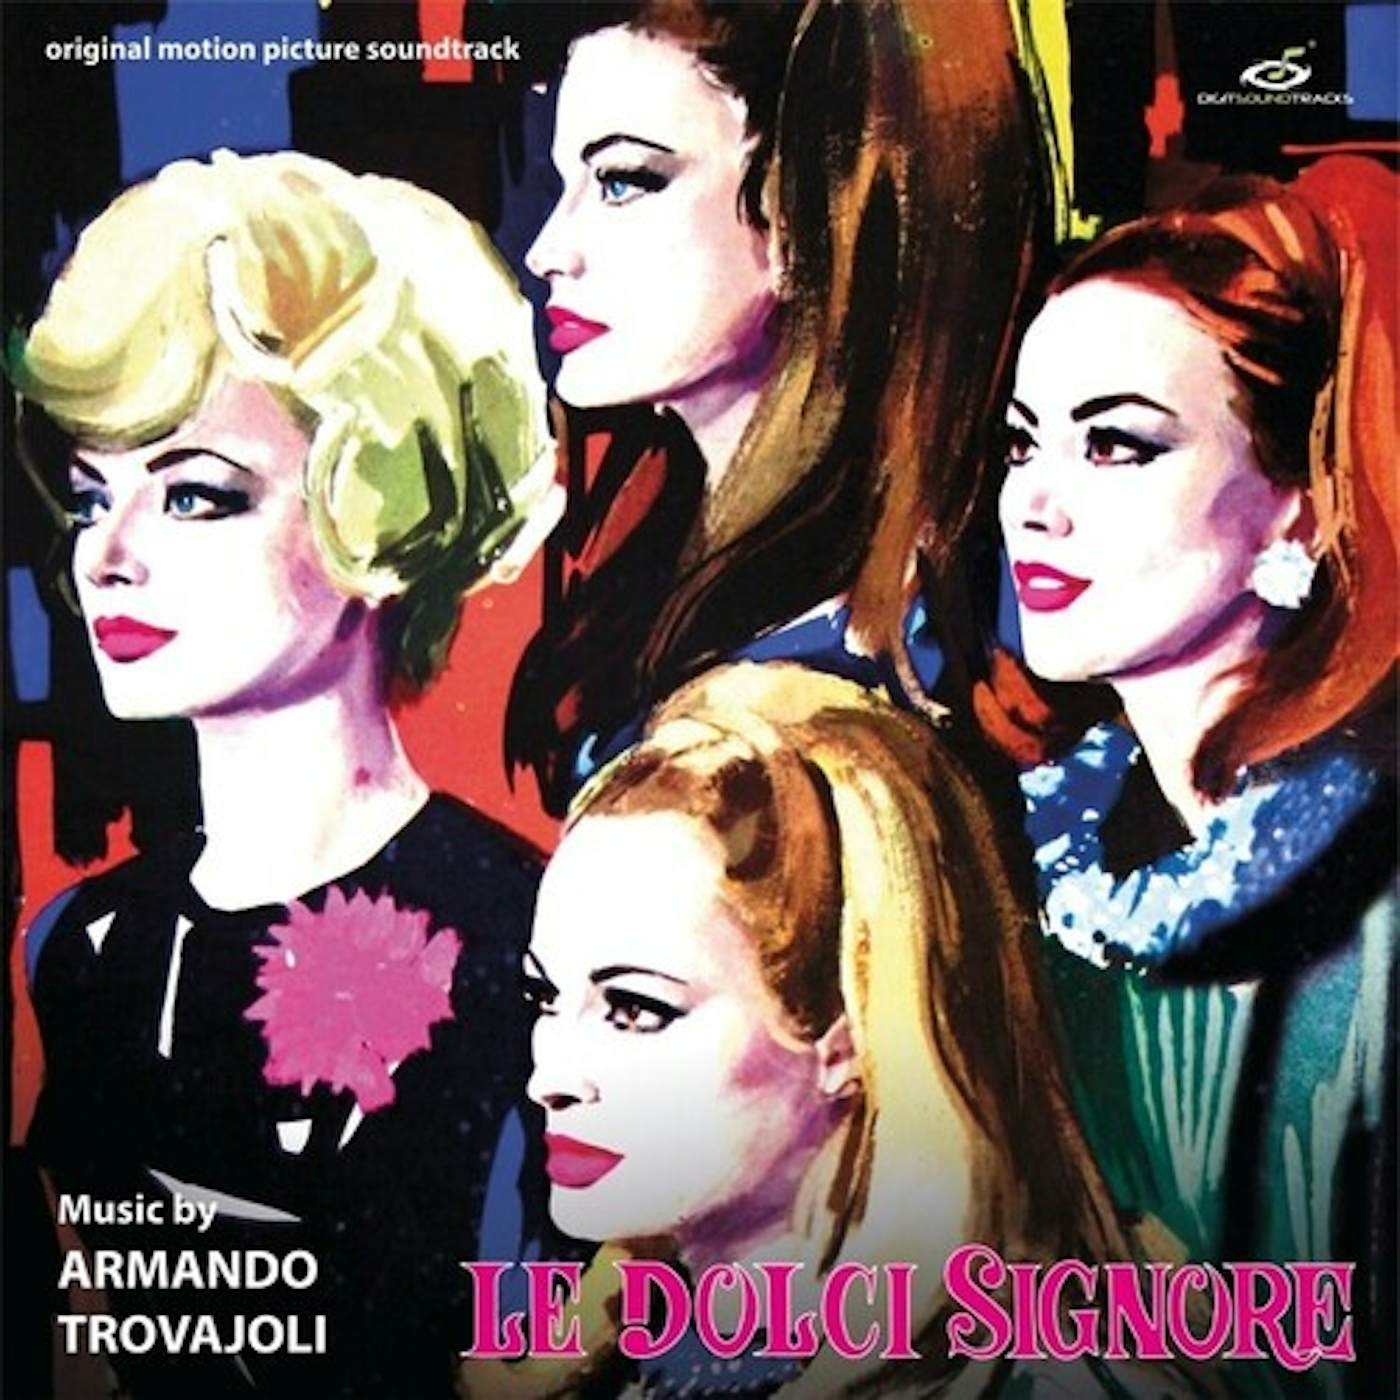 Dolci Signore / O.S.T. DOLCI SIGNORE / Original Soundtrack Vinyl Record